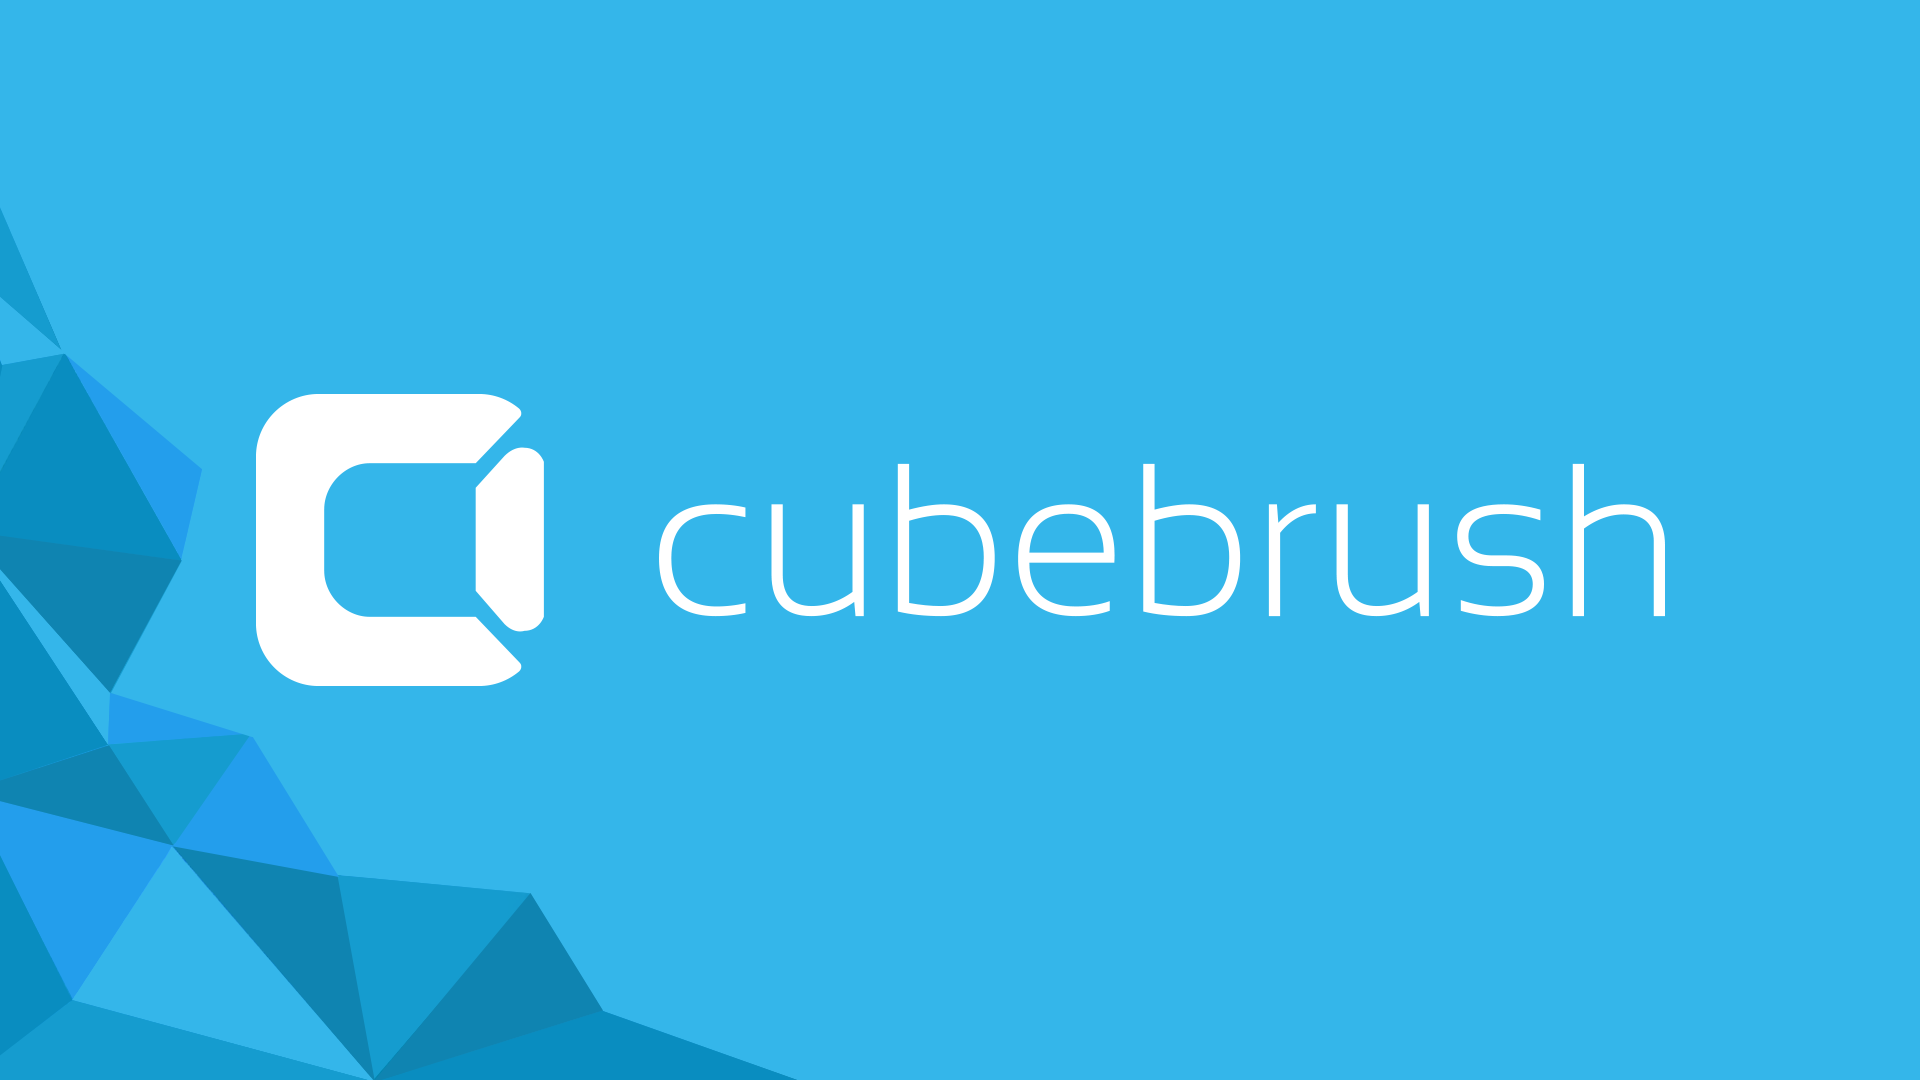 (c) Cubebrush.co